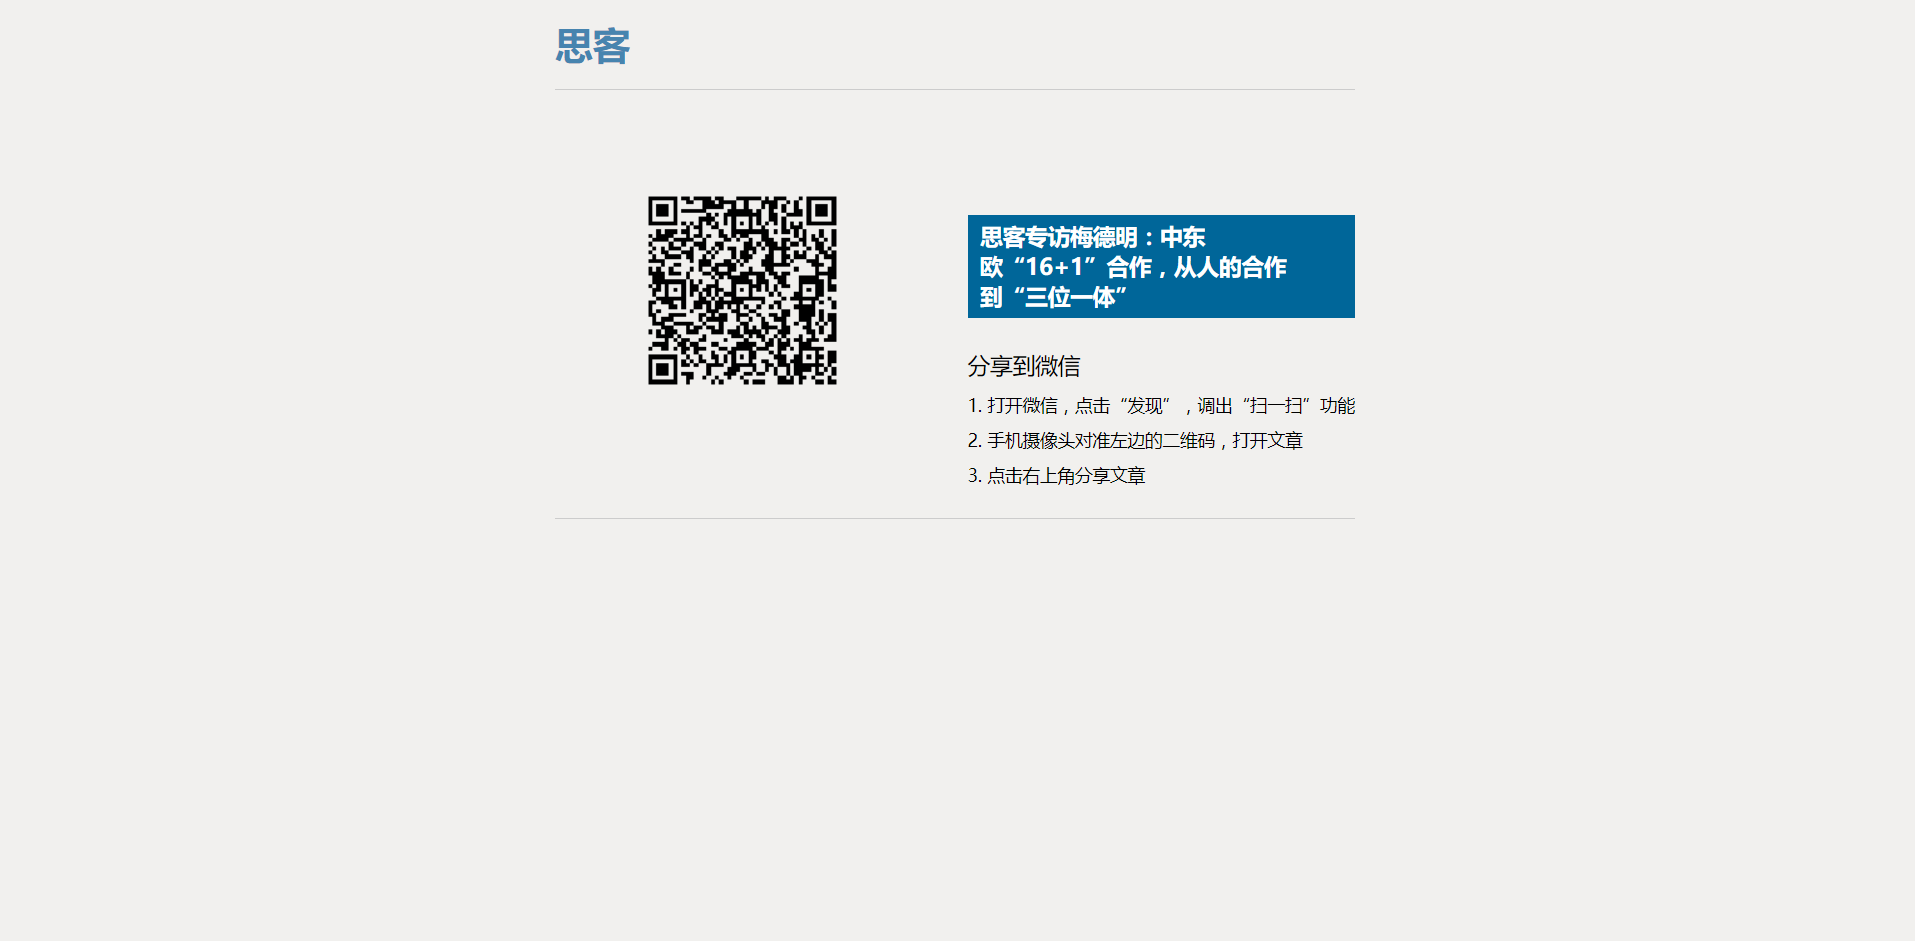 Zrzut ekranu kodu QR do chińskiego artykułu/Screenshot of a QR code for a Chinese article